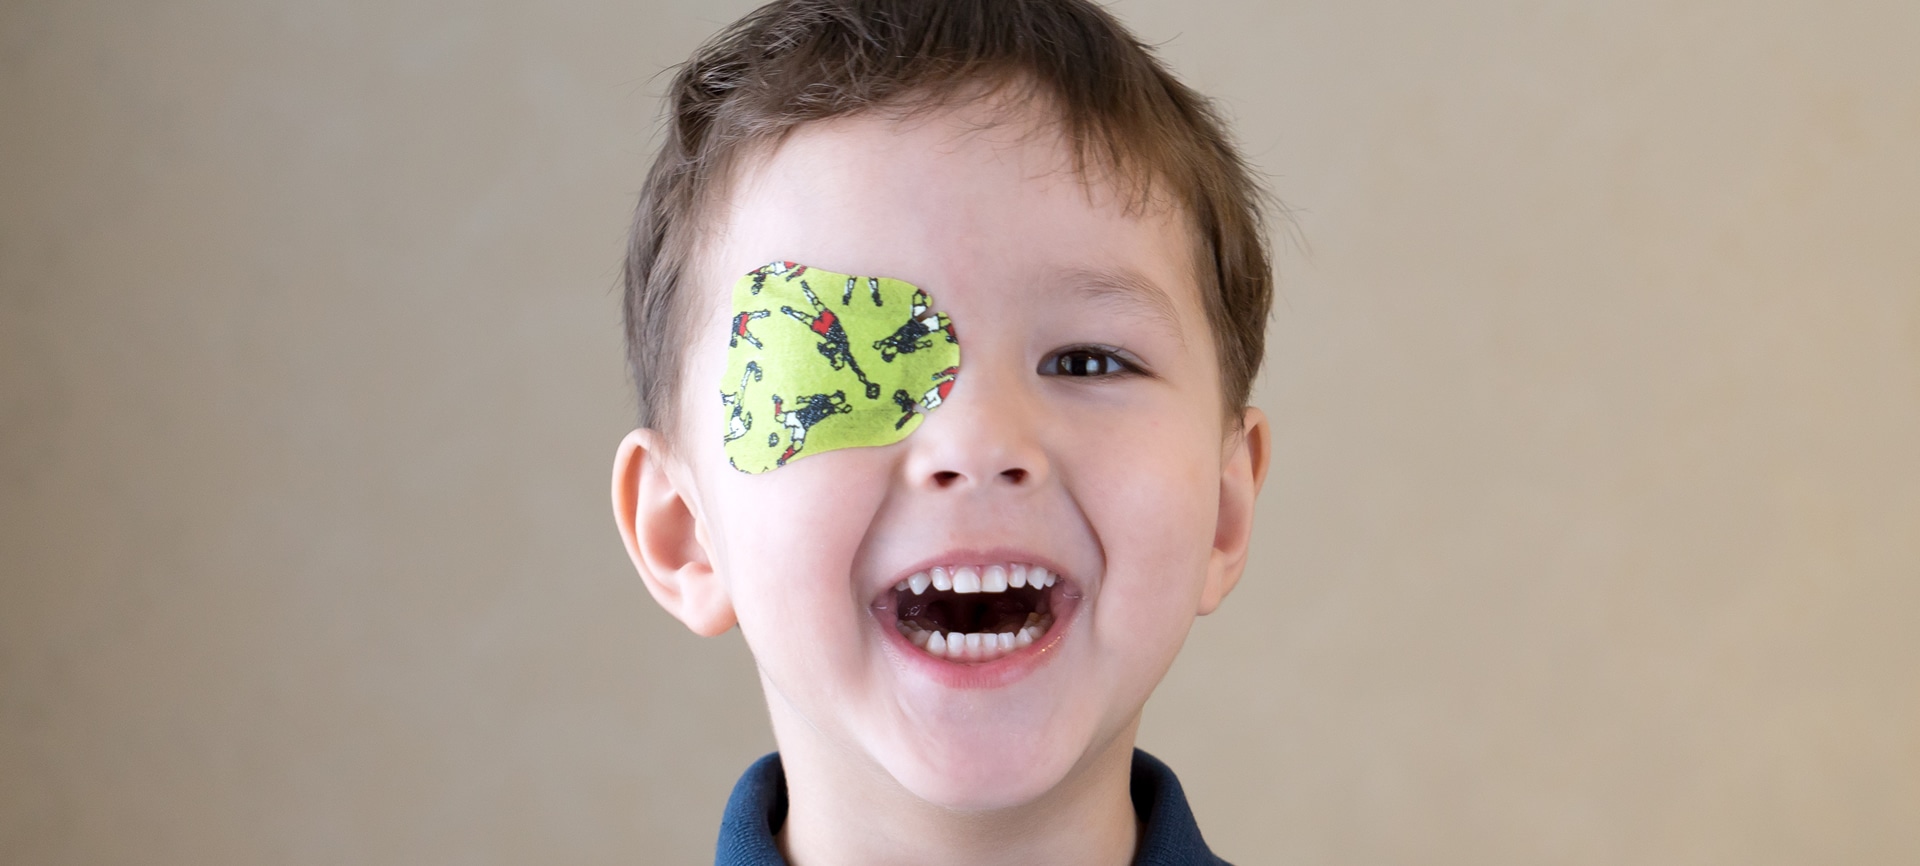 Children Eye Exam: Patching